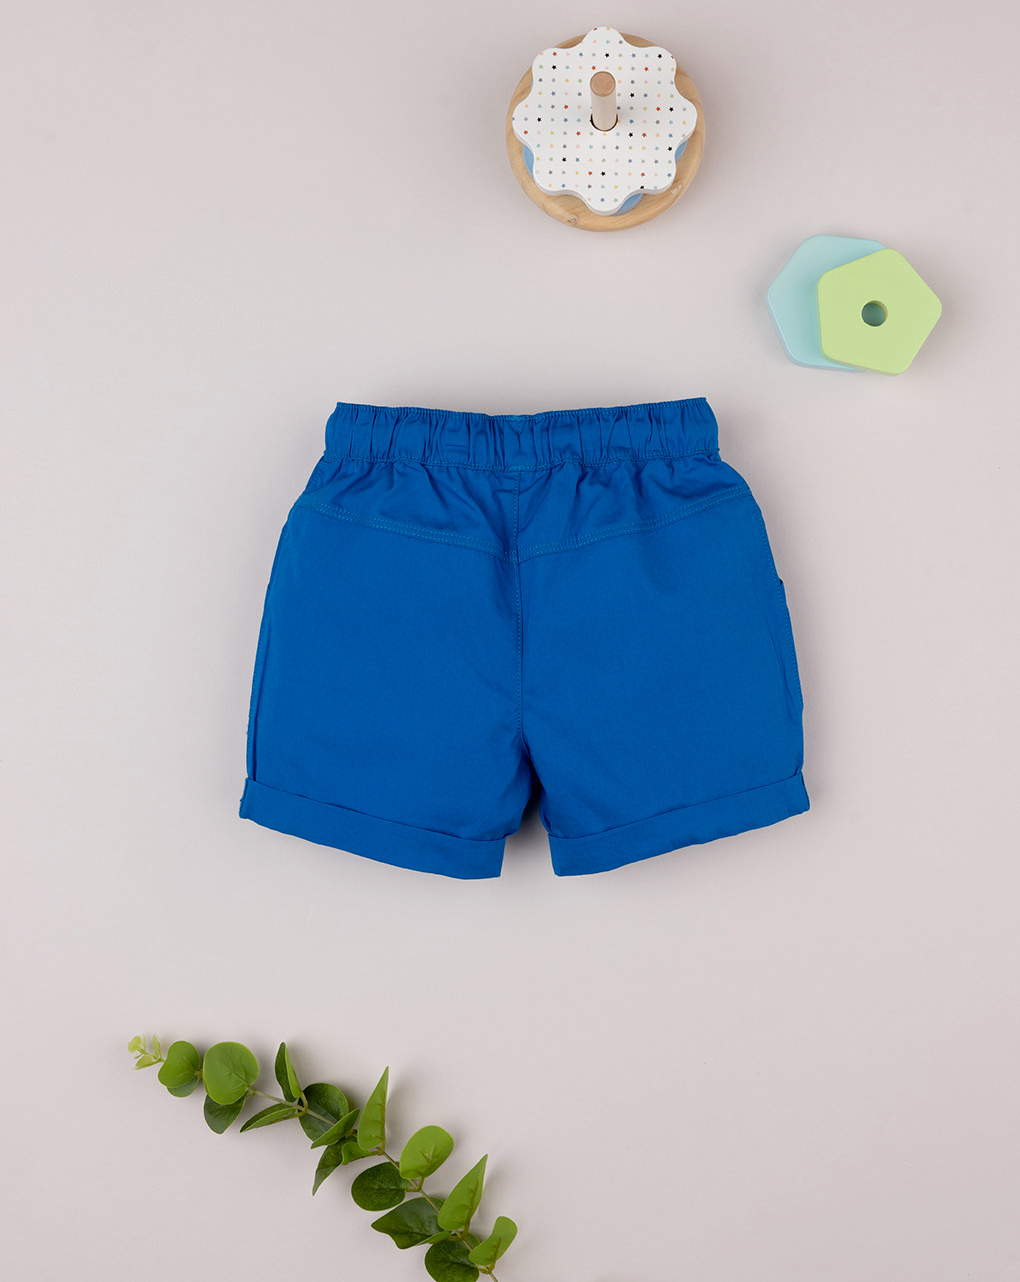 Pantalón corto azul claro para bebé - Prénatal